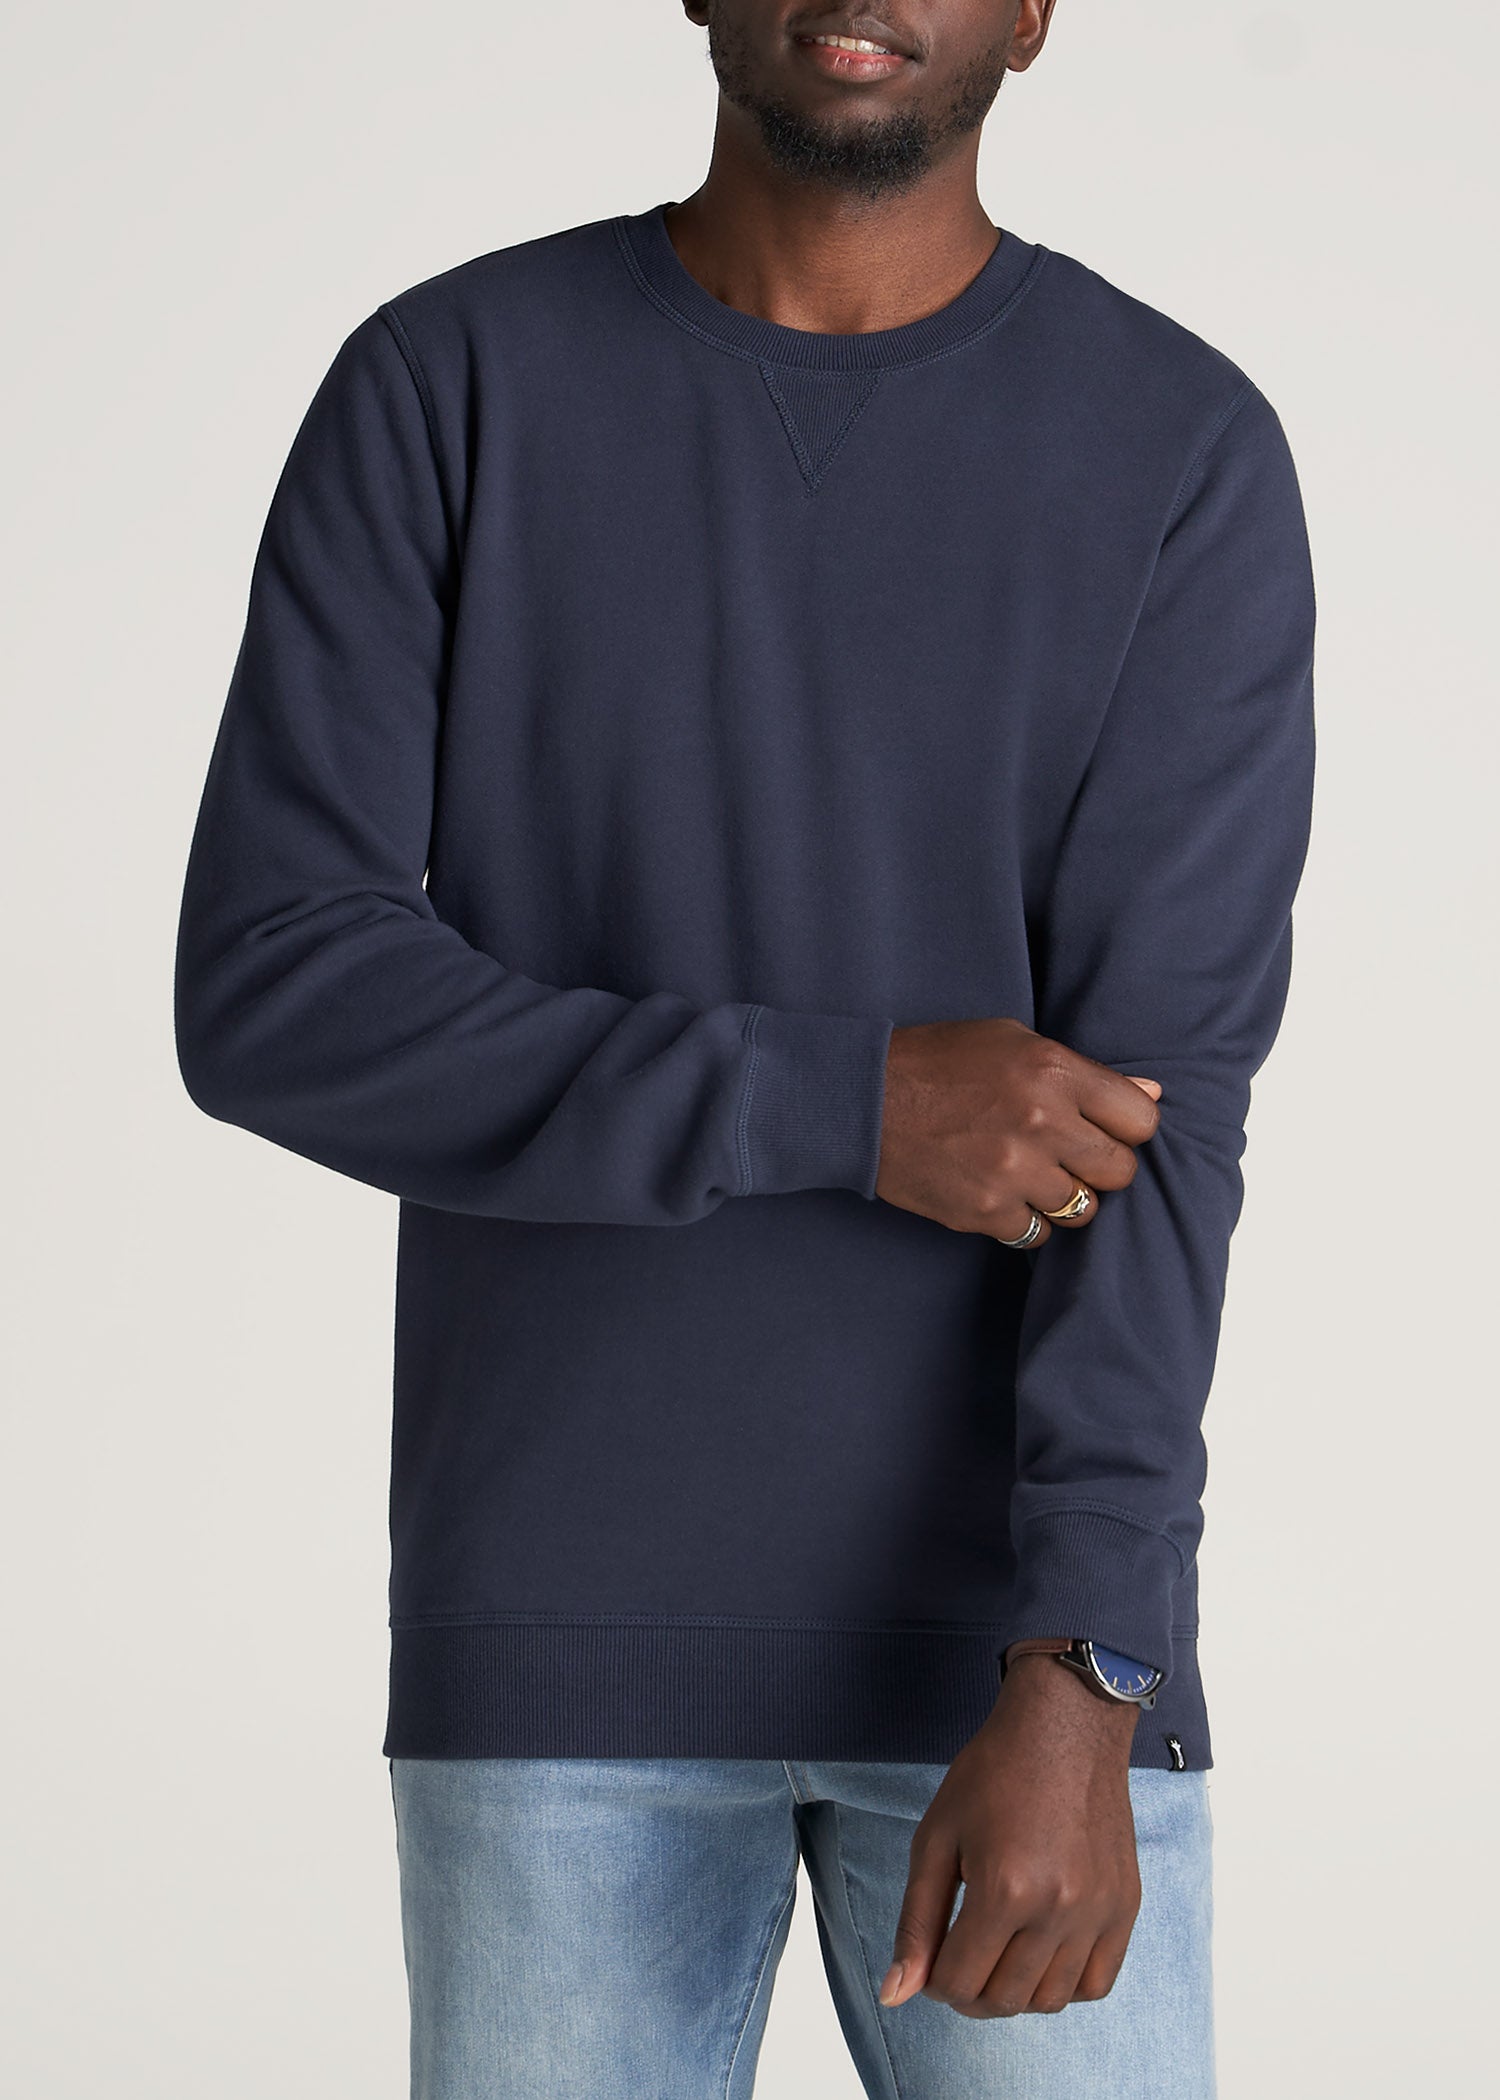 Men's Crewneck Fleece Sweater